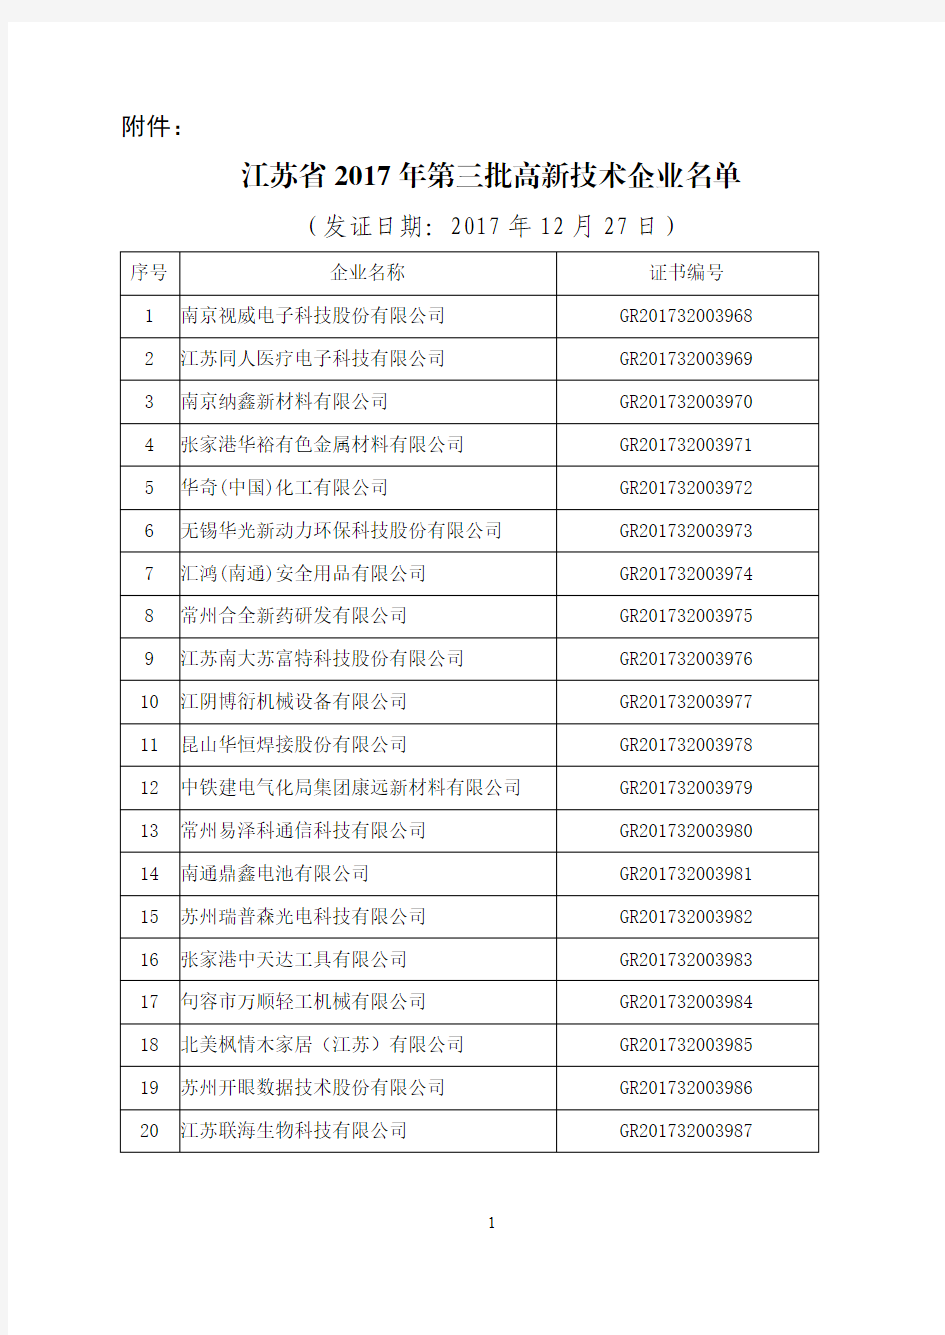 江苏省2017年第三批高新技术企业名单